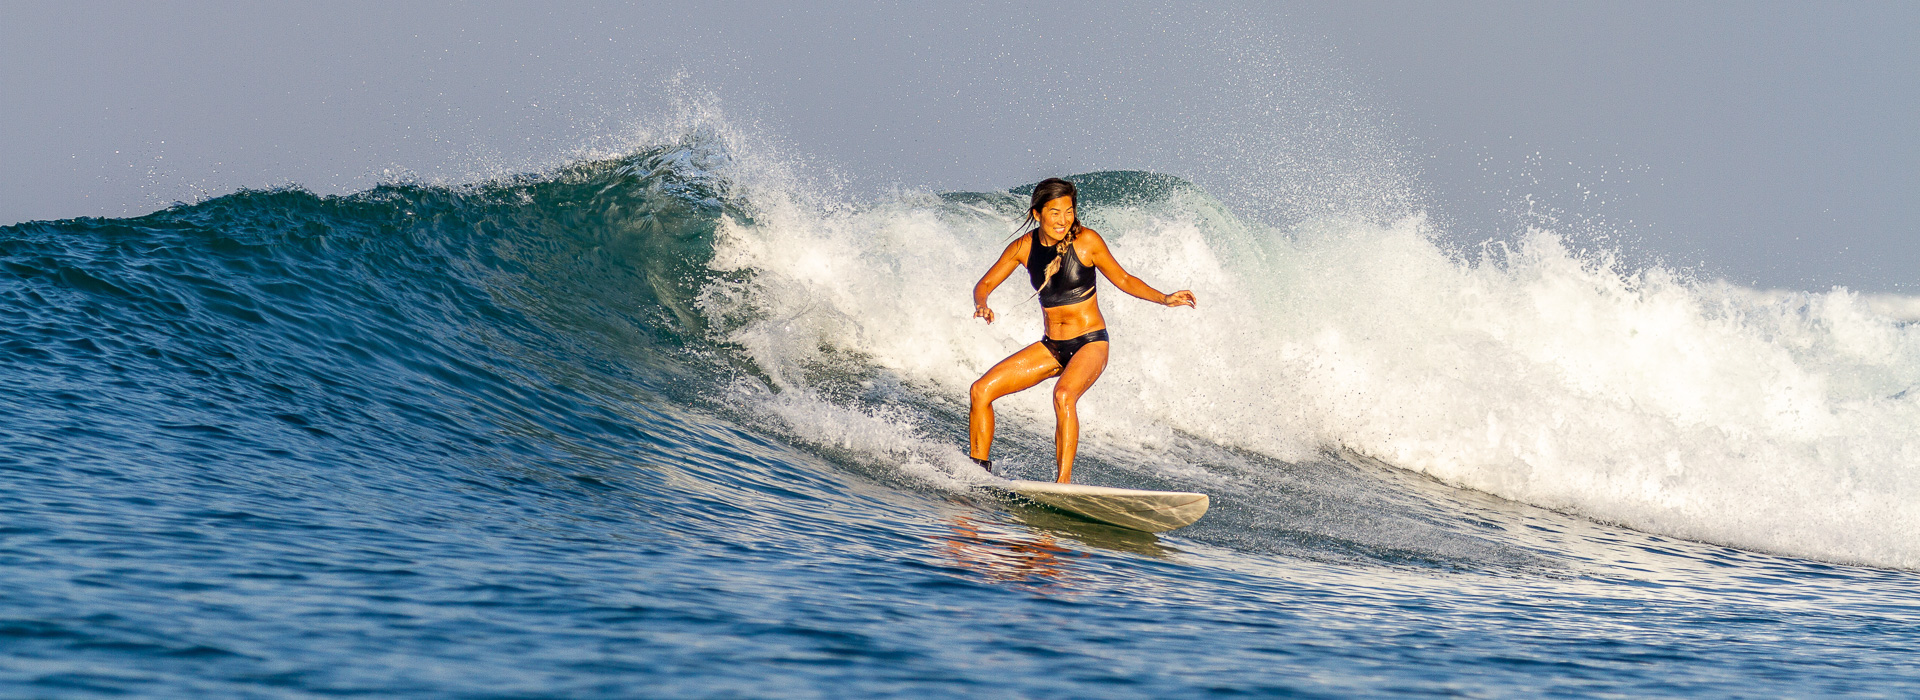 A girl riding a wave at Toro-Toro